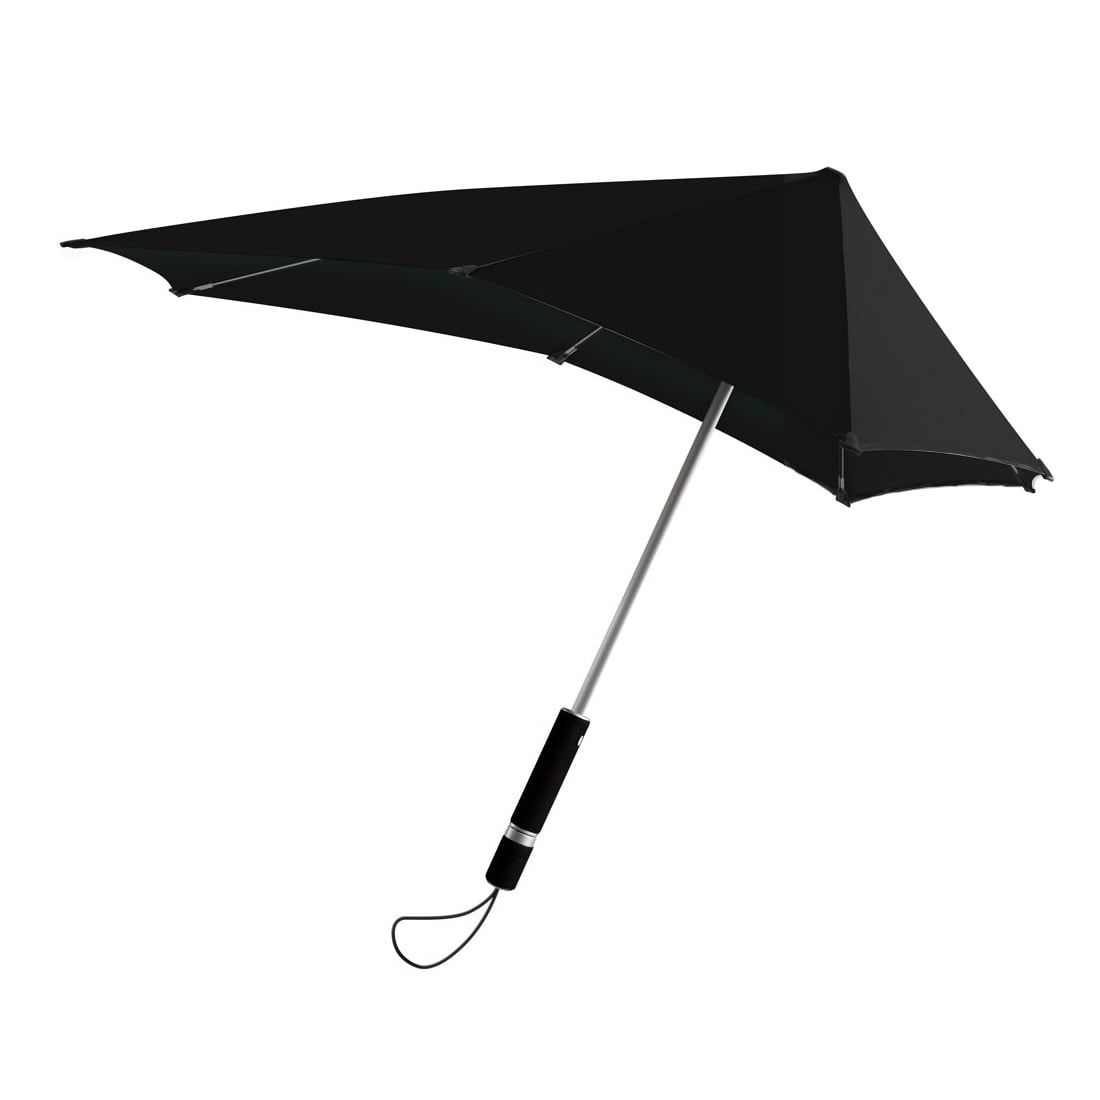 DesignNest Smart |Senz| Ομπρέλα καταιγίδας – DH0187BK/UMSENZ σε Pure Black χρώμα